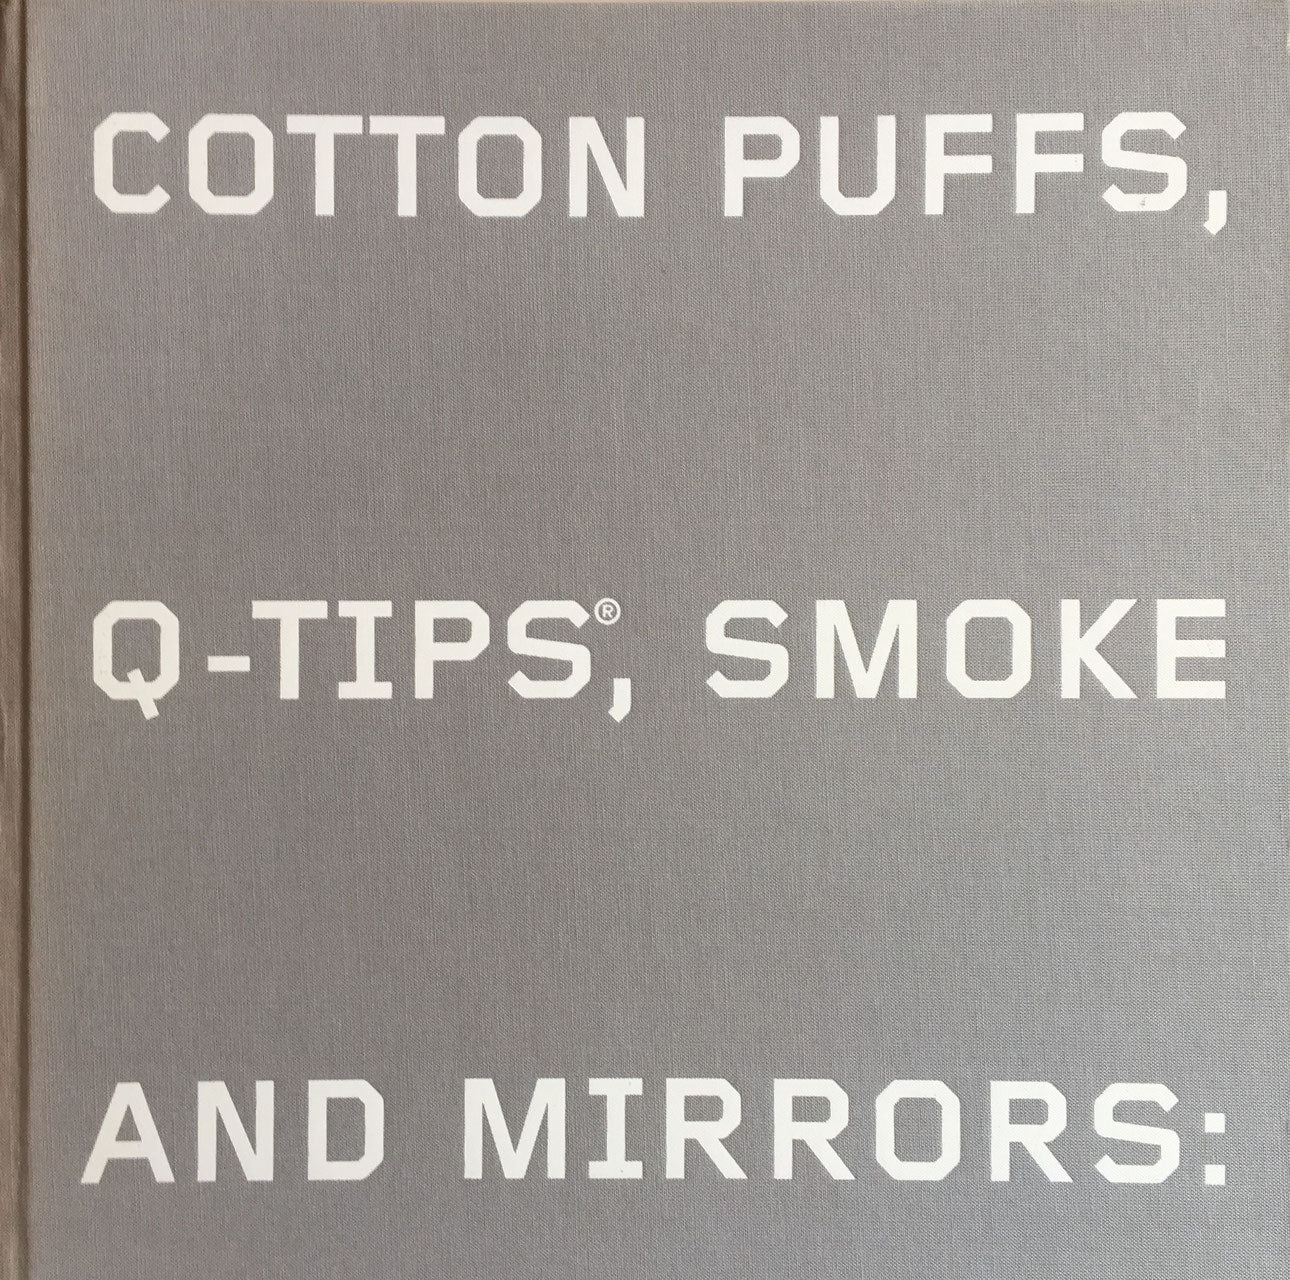 エド・ルシェ Cotton Puffs, Q-tips®, Smoke and Mirrors: The Drawings of Ed Ruscha’s